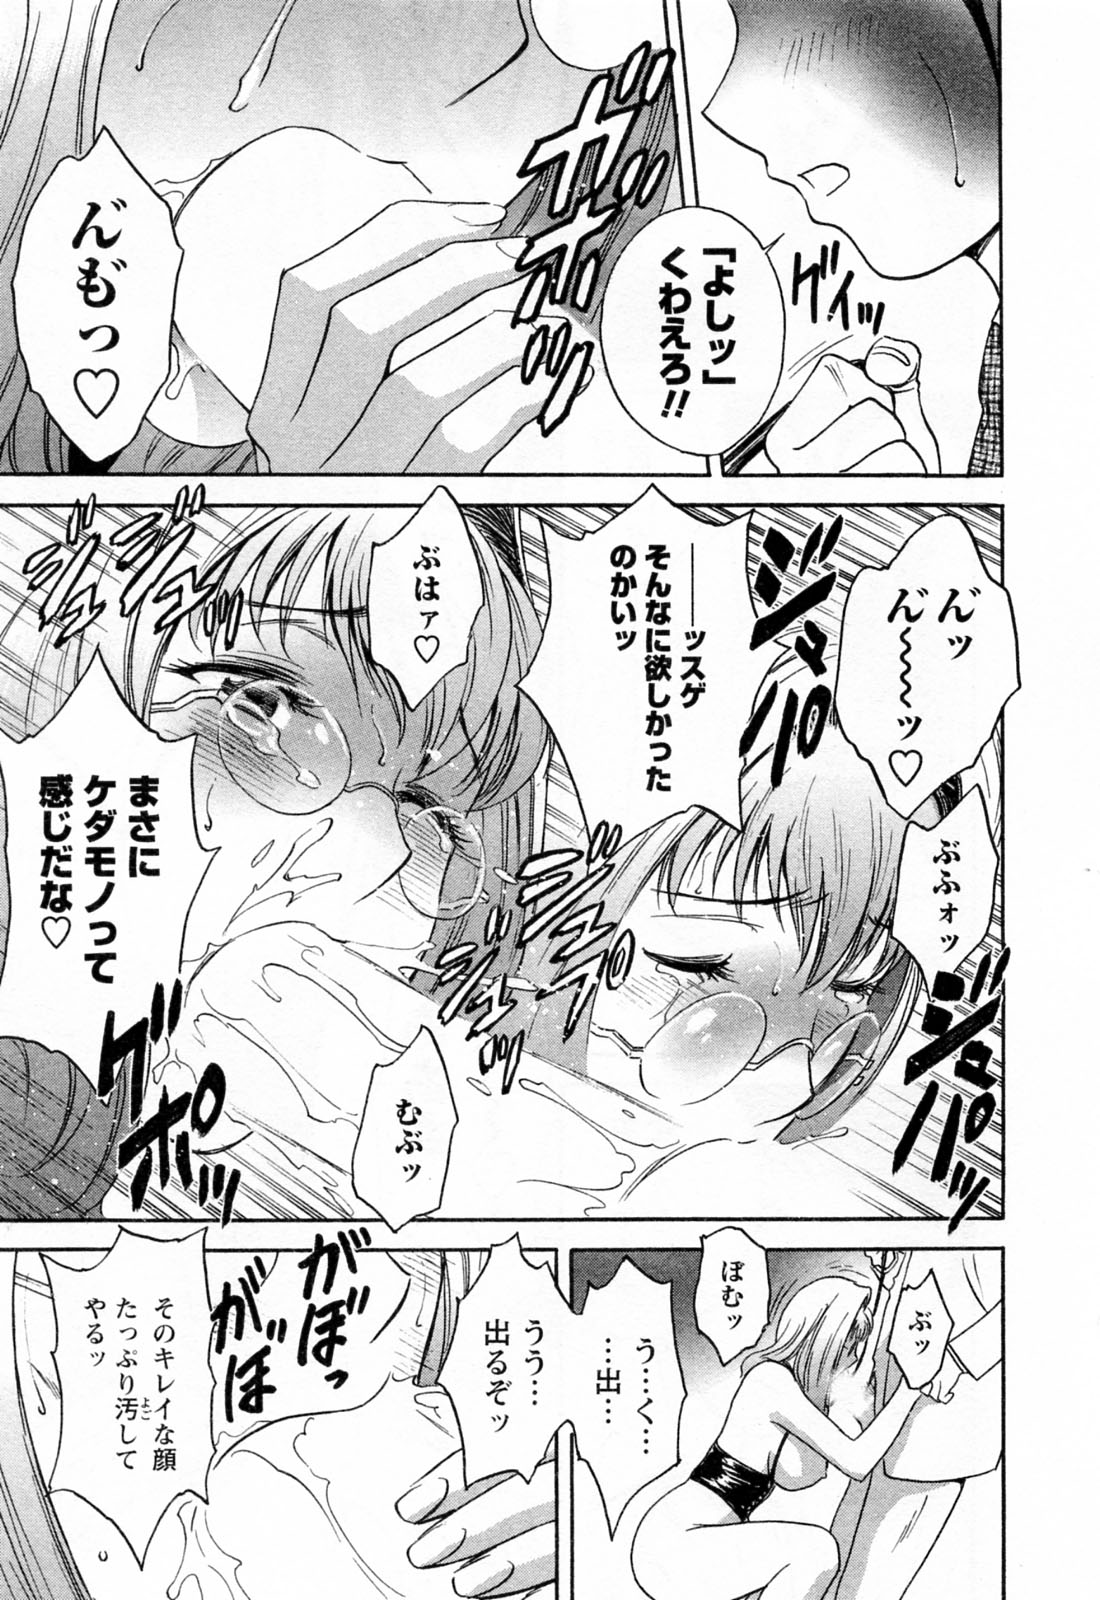 [Hidemaru] Mo-Retsu! Boin Sensei (Boing Boing Teacher) Vol.4 page 23 full